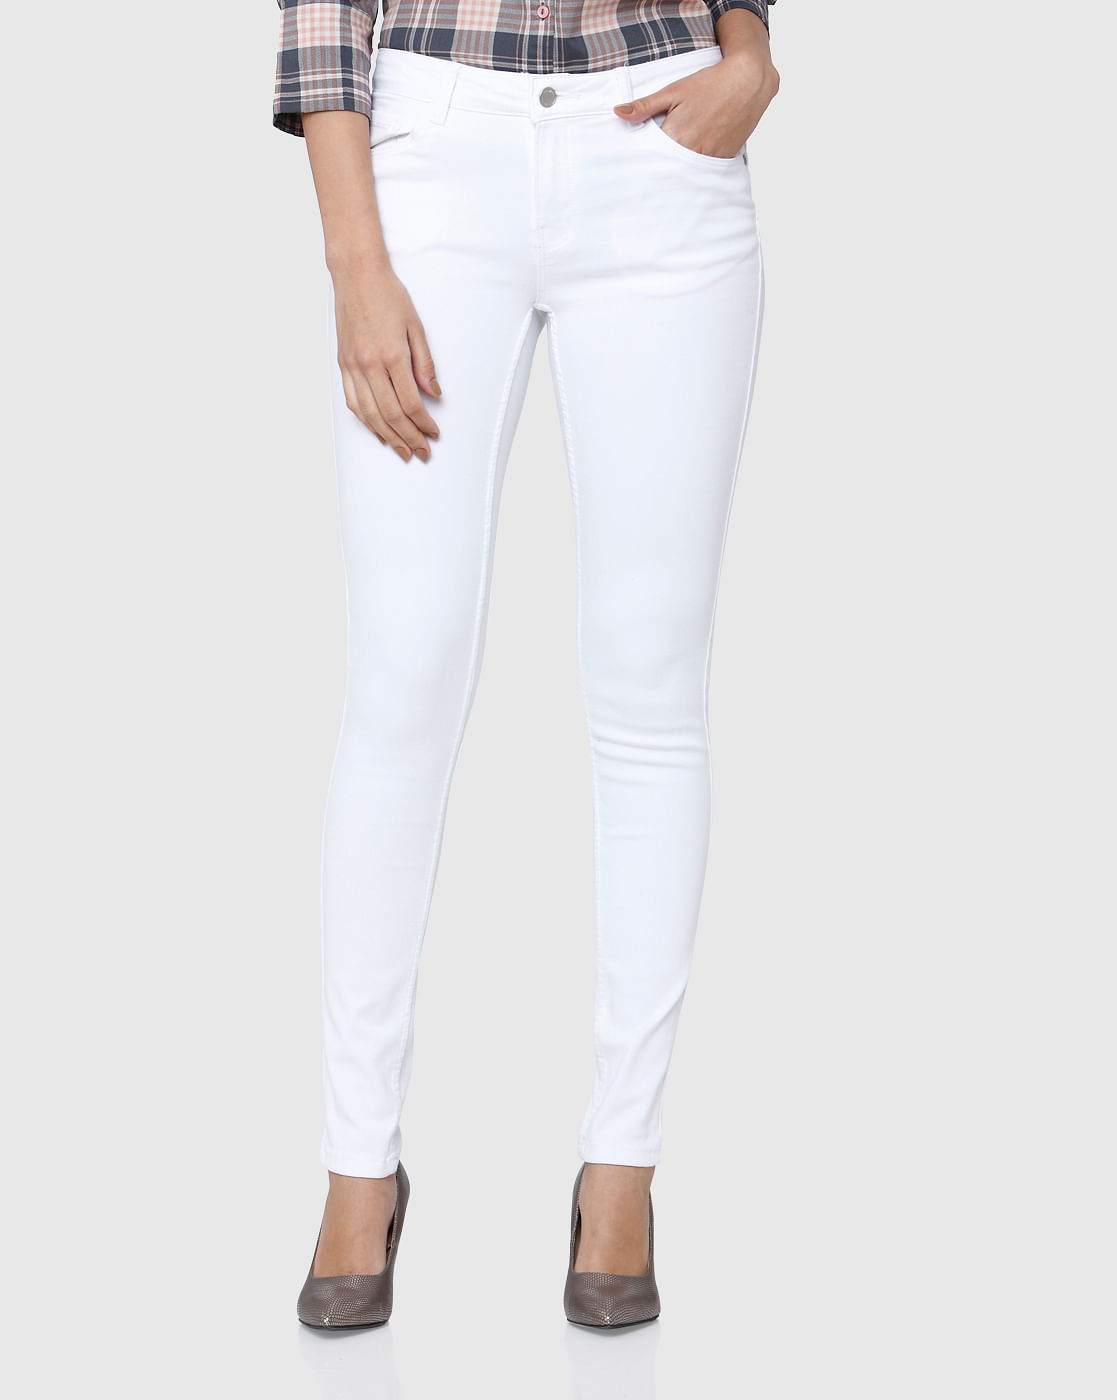 vero moda white jeans